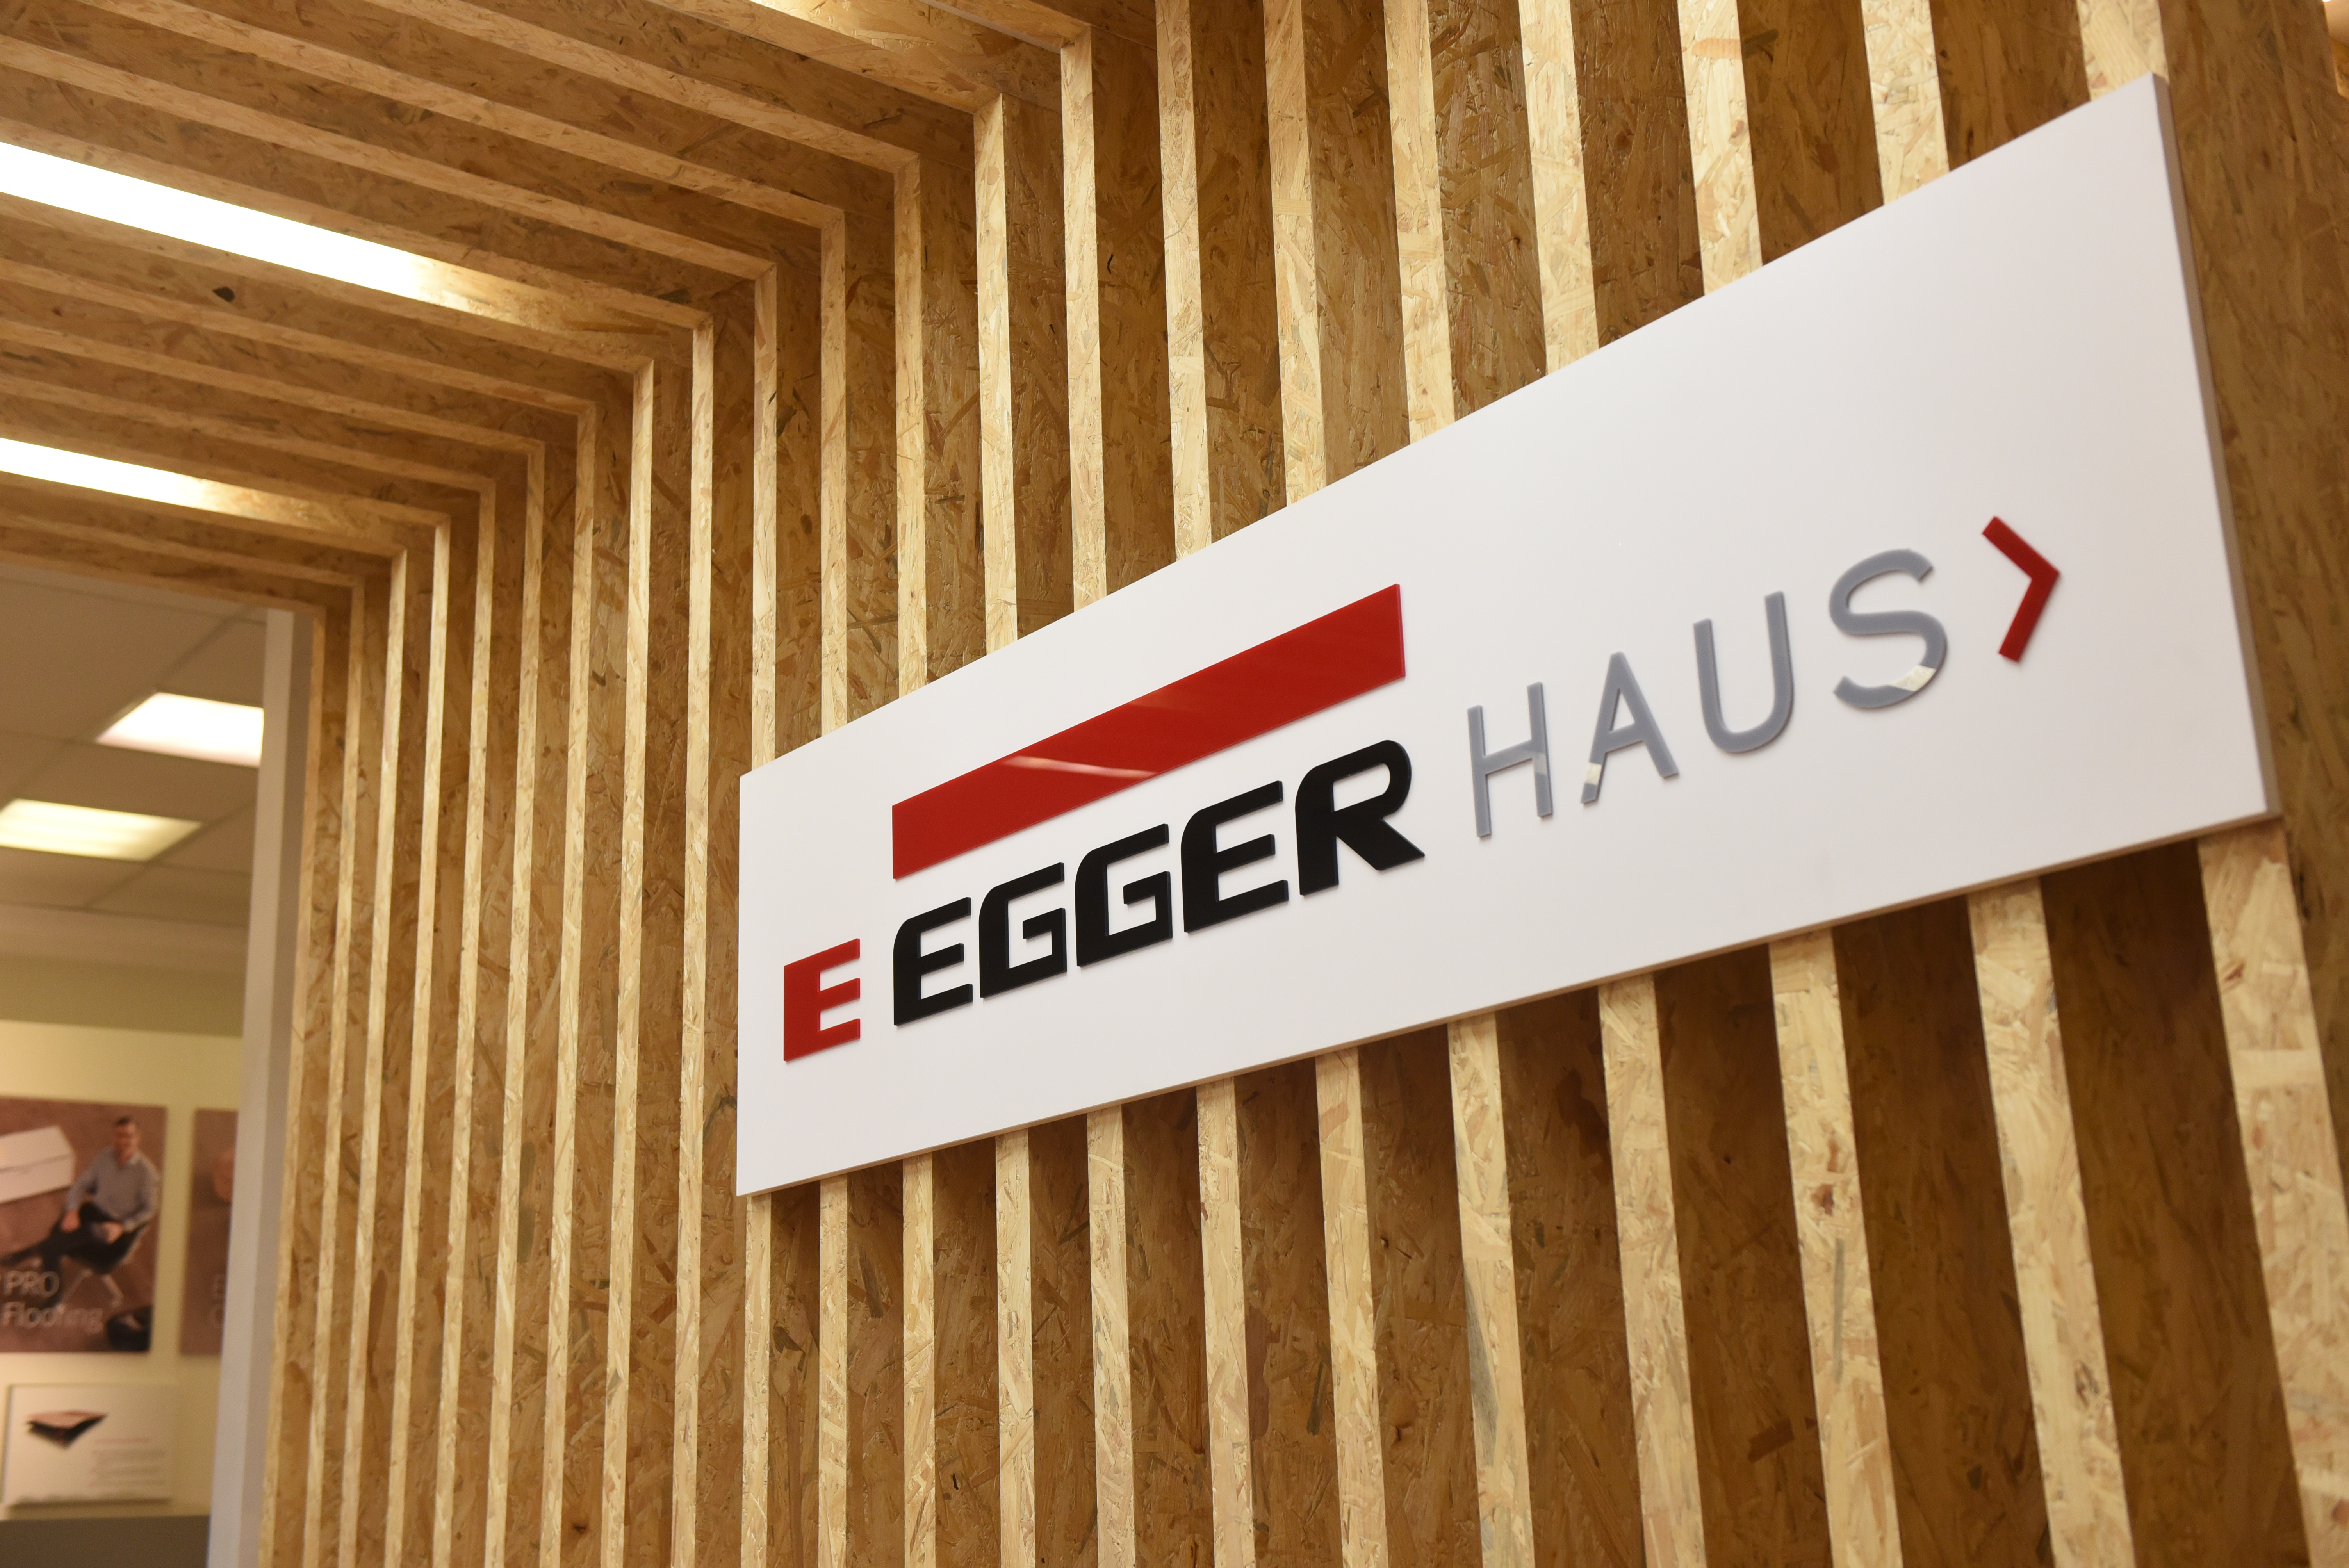 Distribuidores EGGER Haus